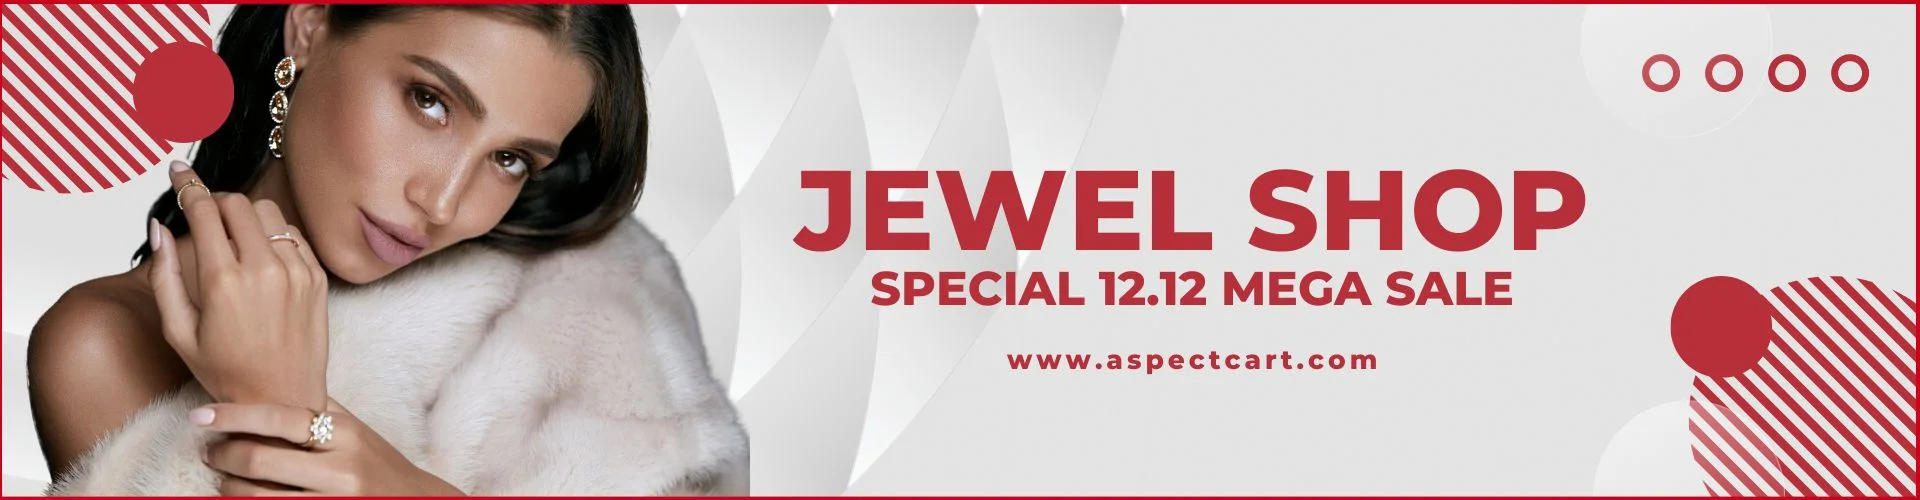 Banner anunciando a coleção de joias em uma loja de joias online